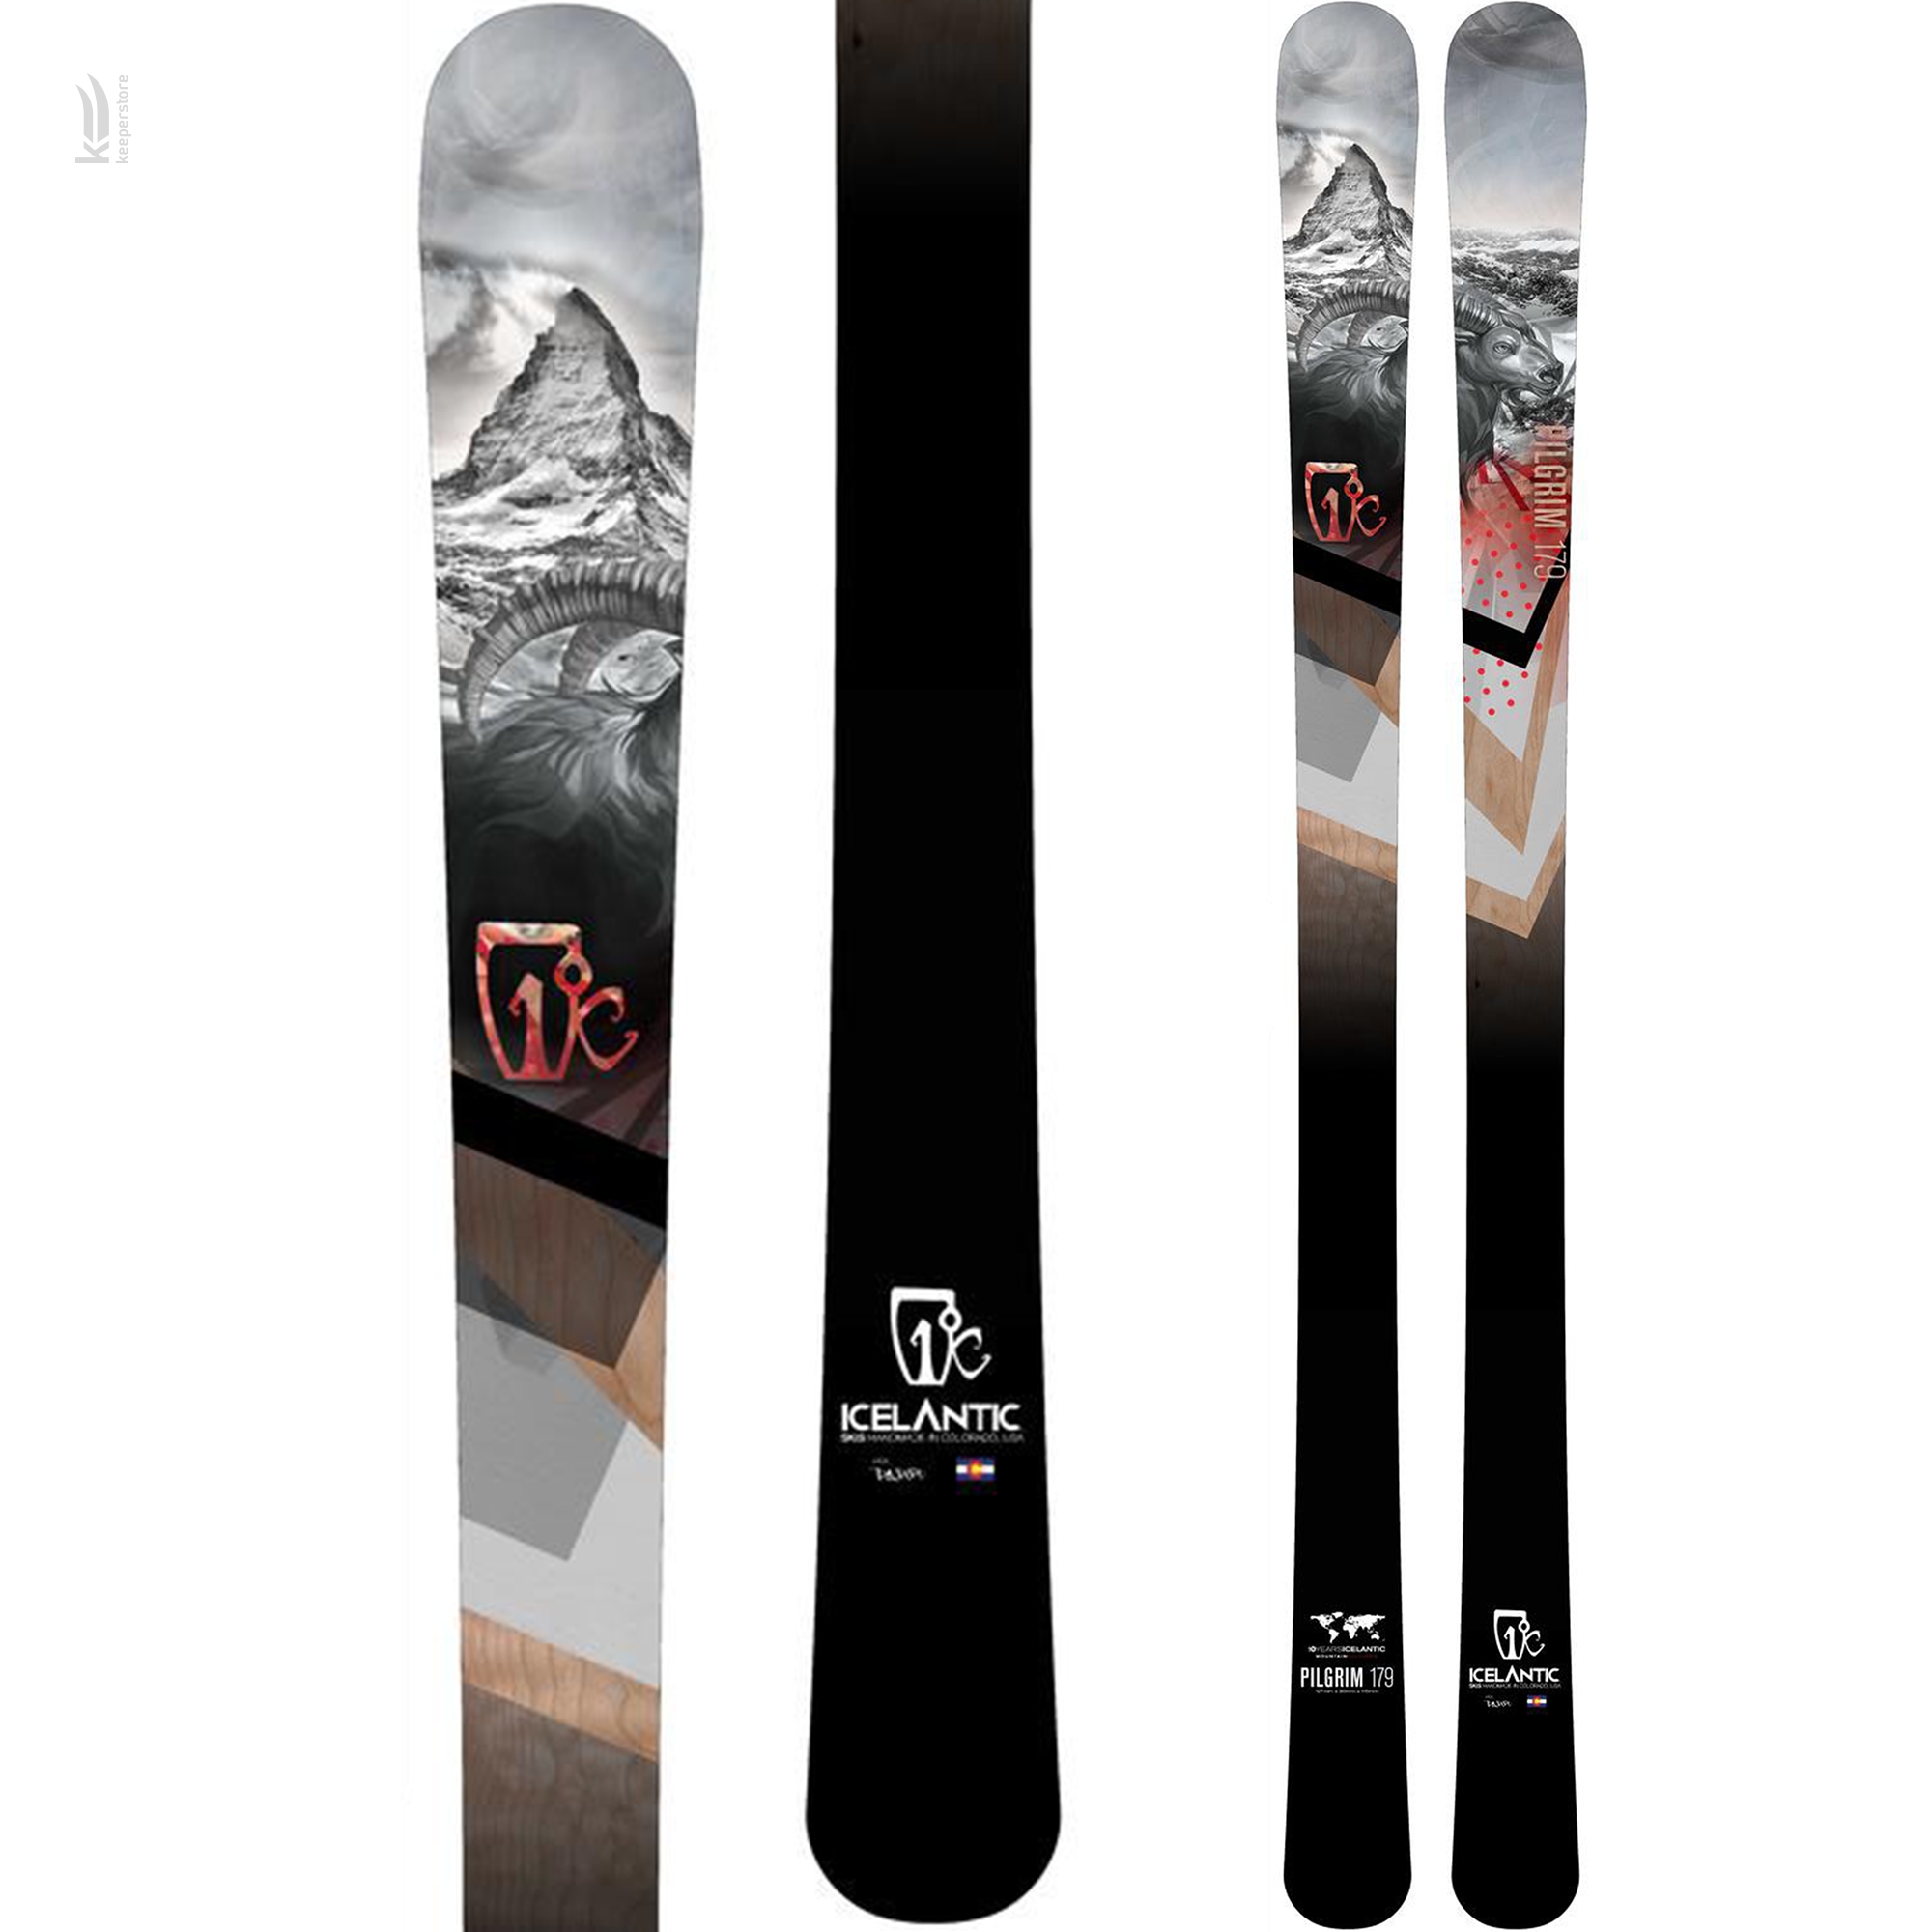 Лыжи для карвинга Icelantic Pilgrim 90 2015/2016 169cm